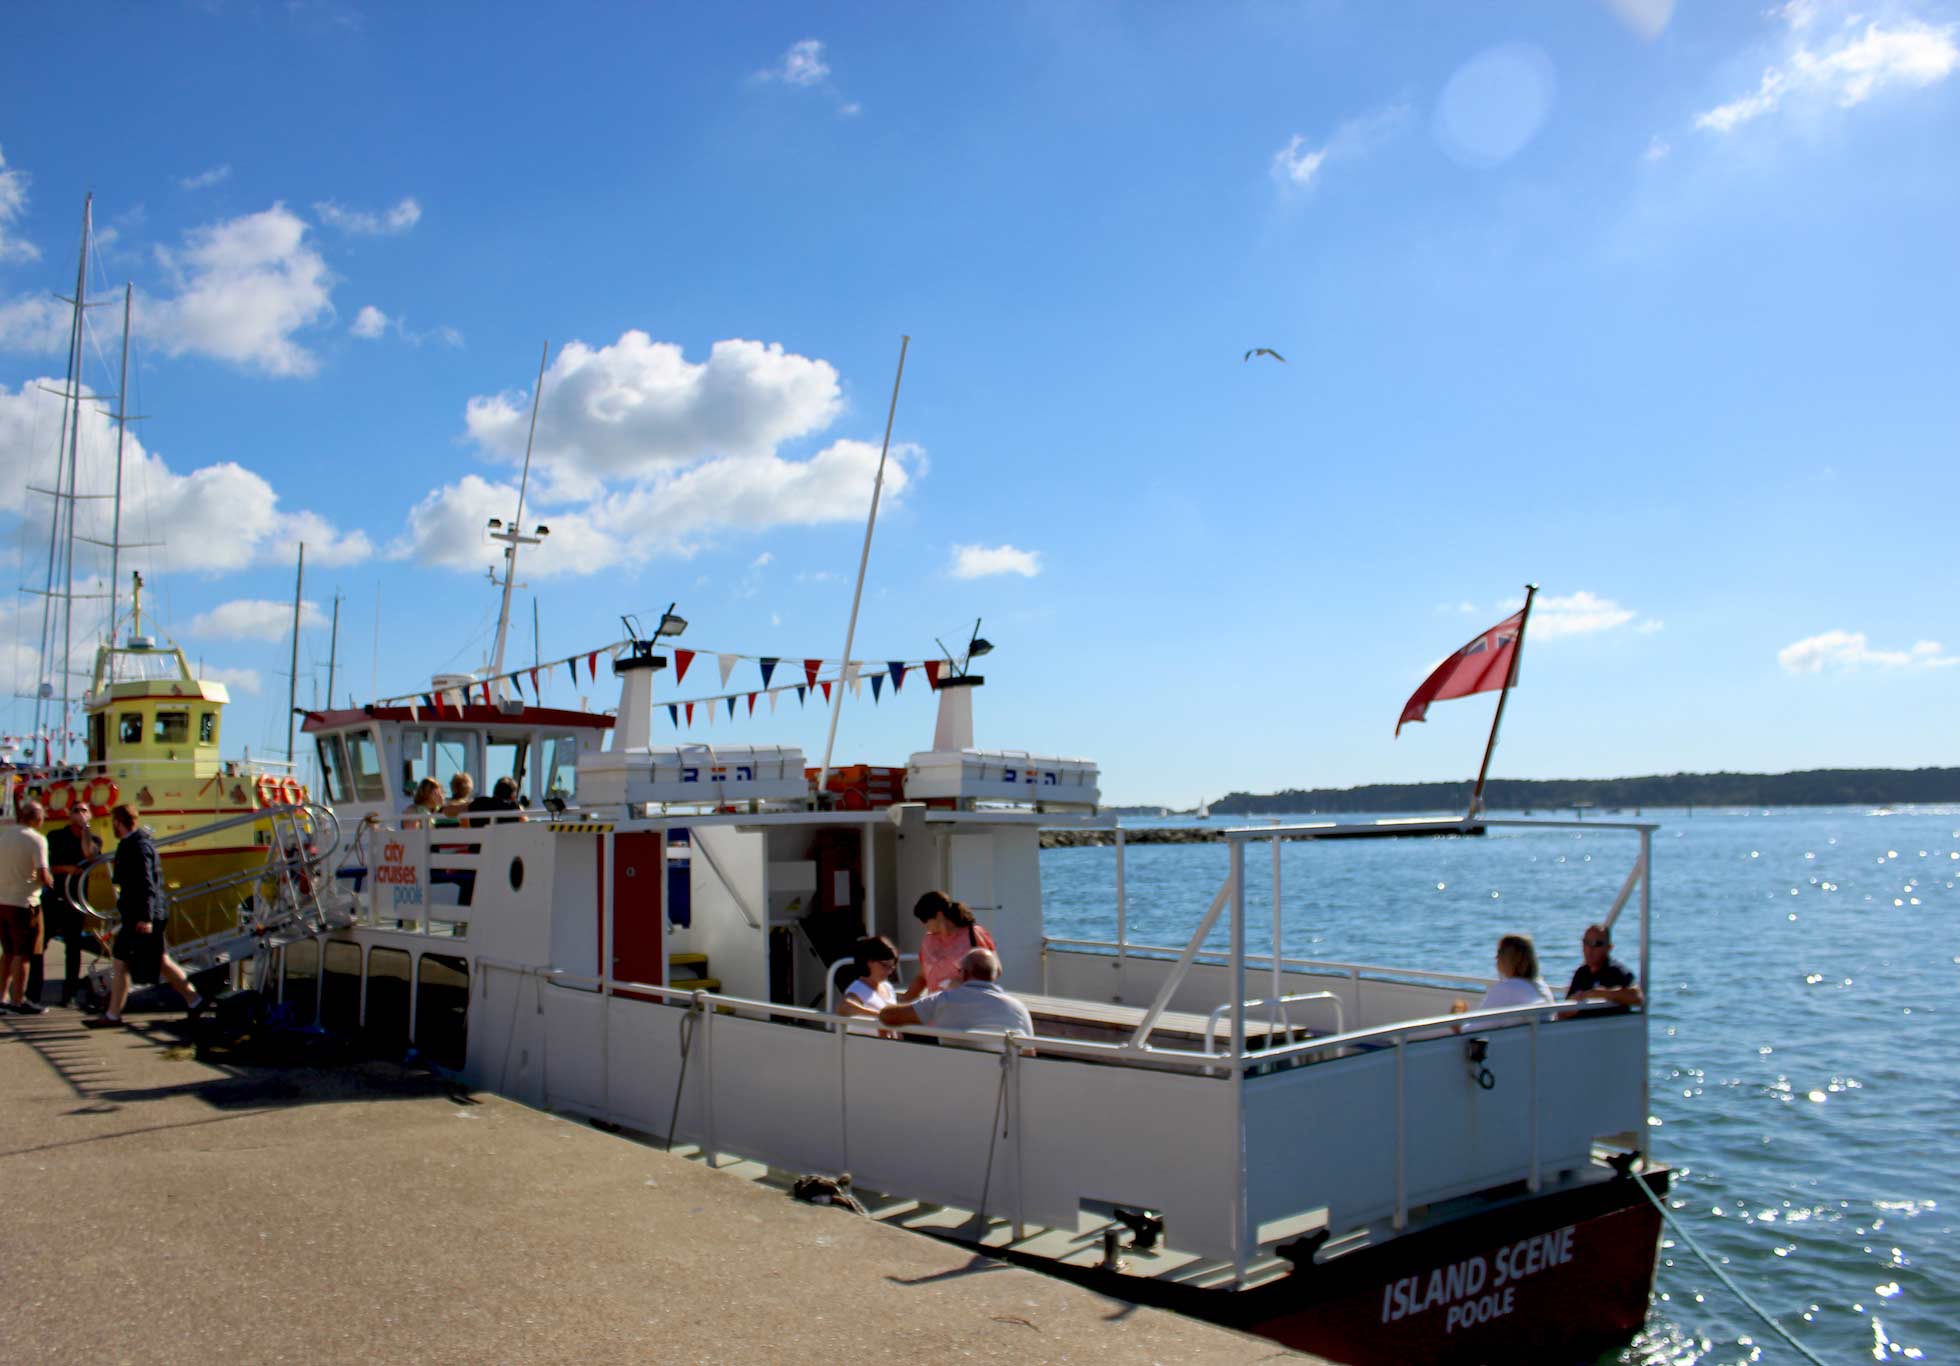 مشهد الجزيرة قارب صغير يرسو في بول مع أشخاص يجلسون على سطح السفينة.